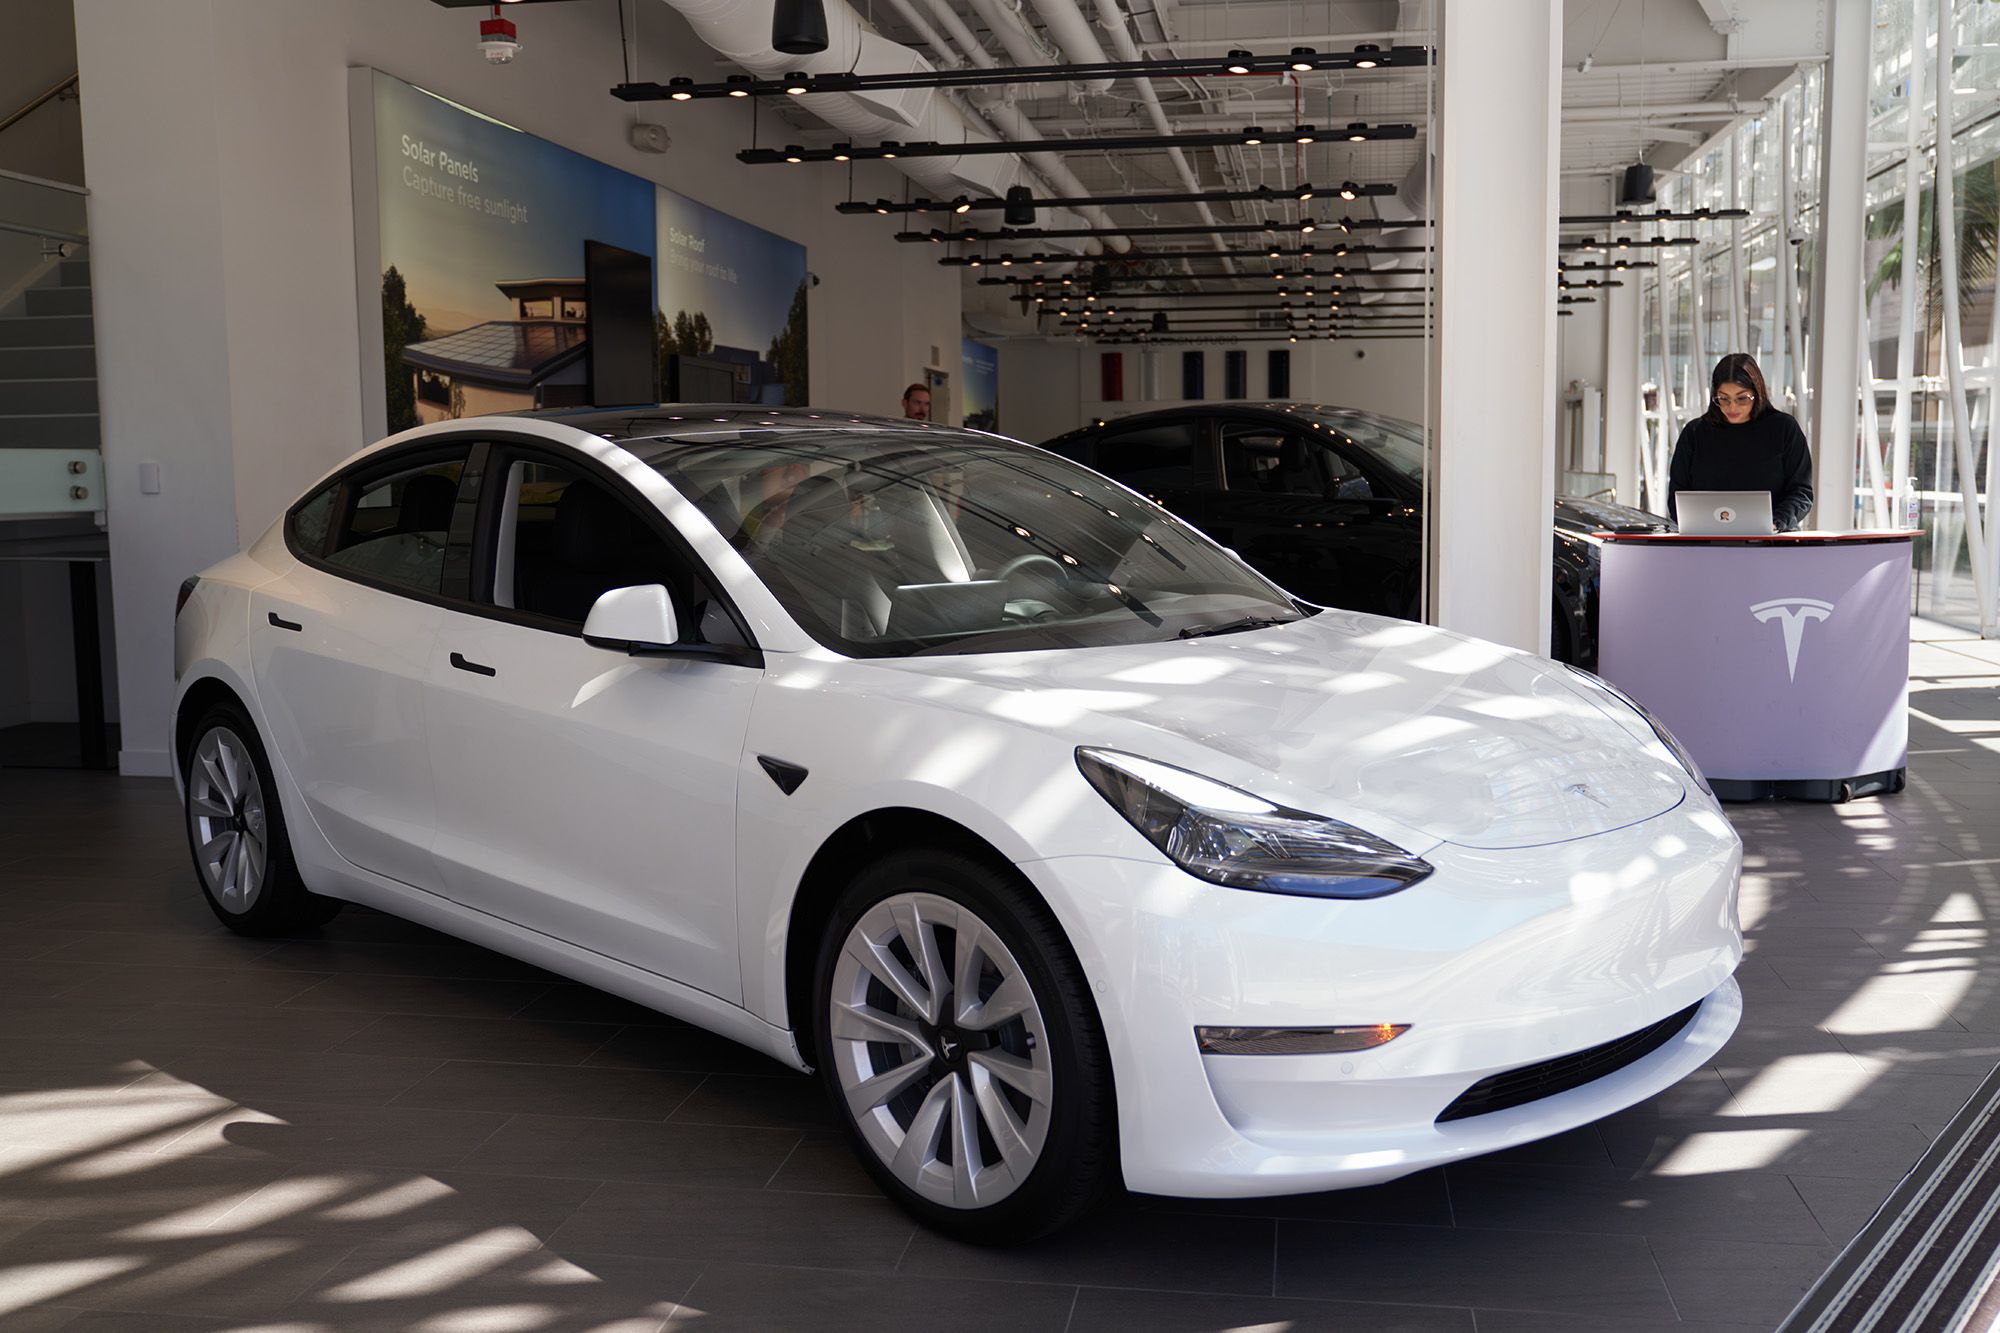 Europe: Tesla Model 3 Breaks Into Top 20 Best-Selling Cars In 2021